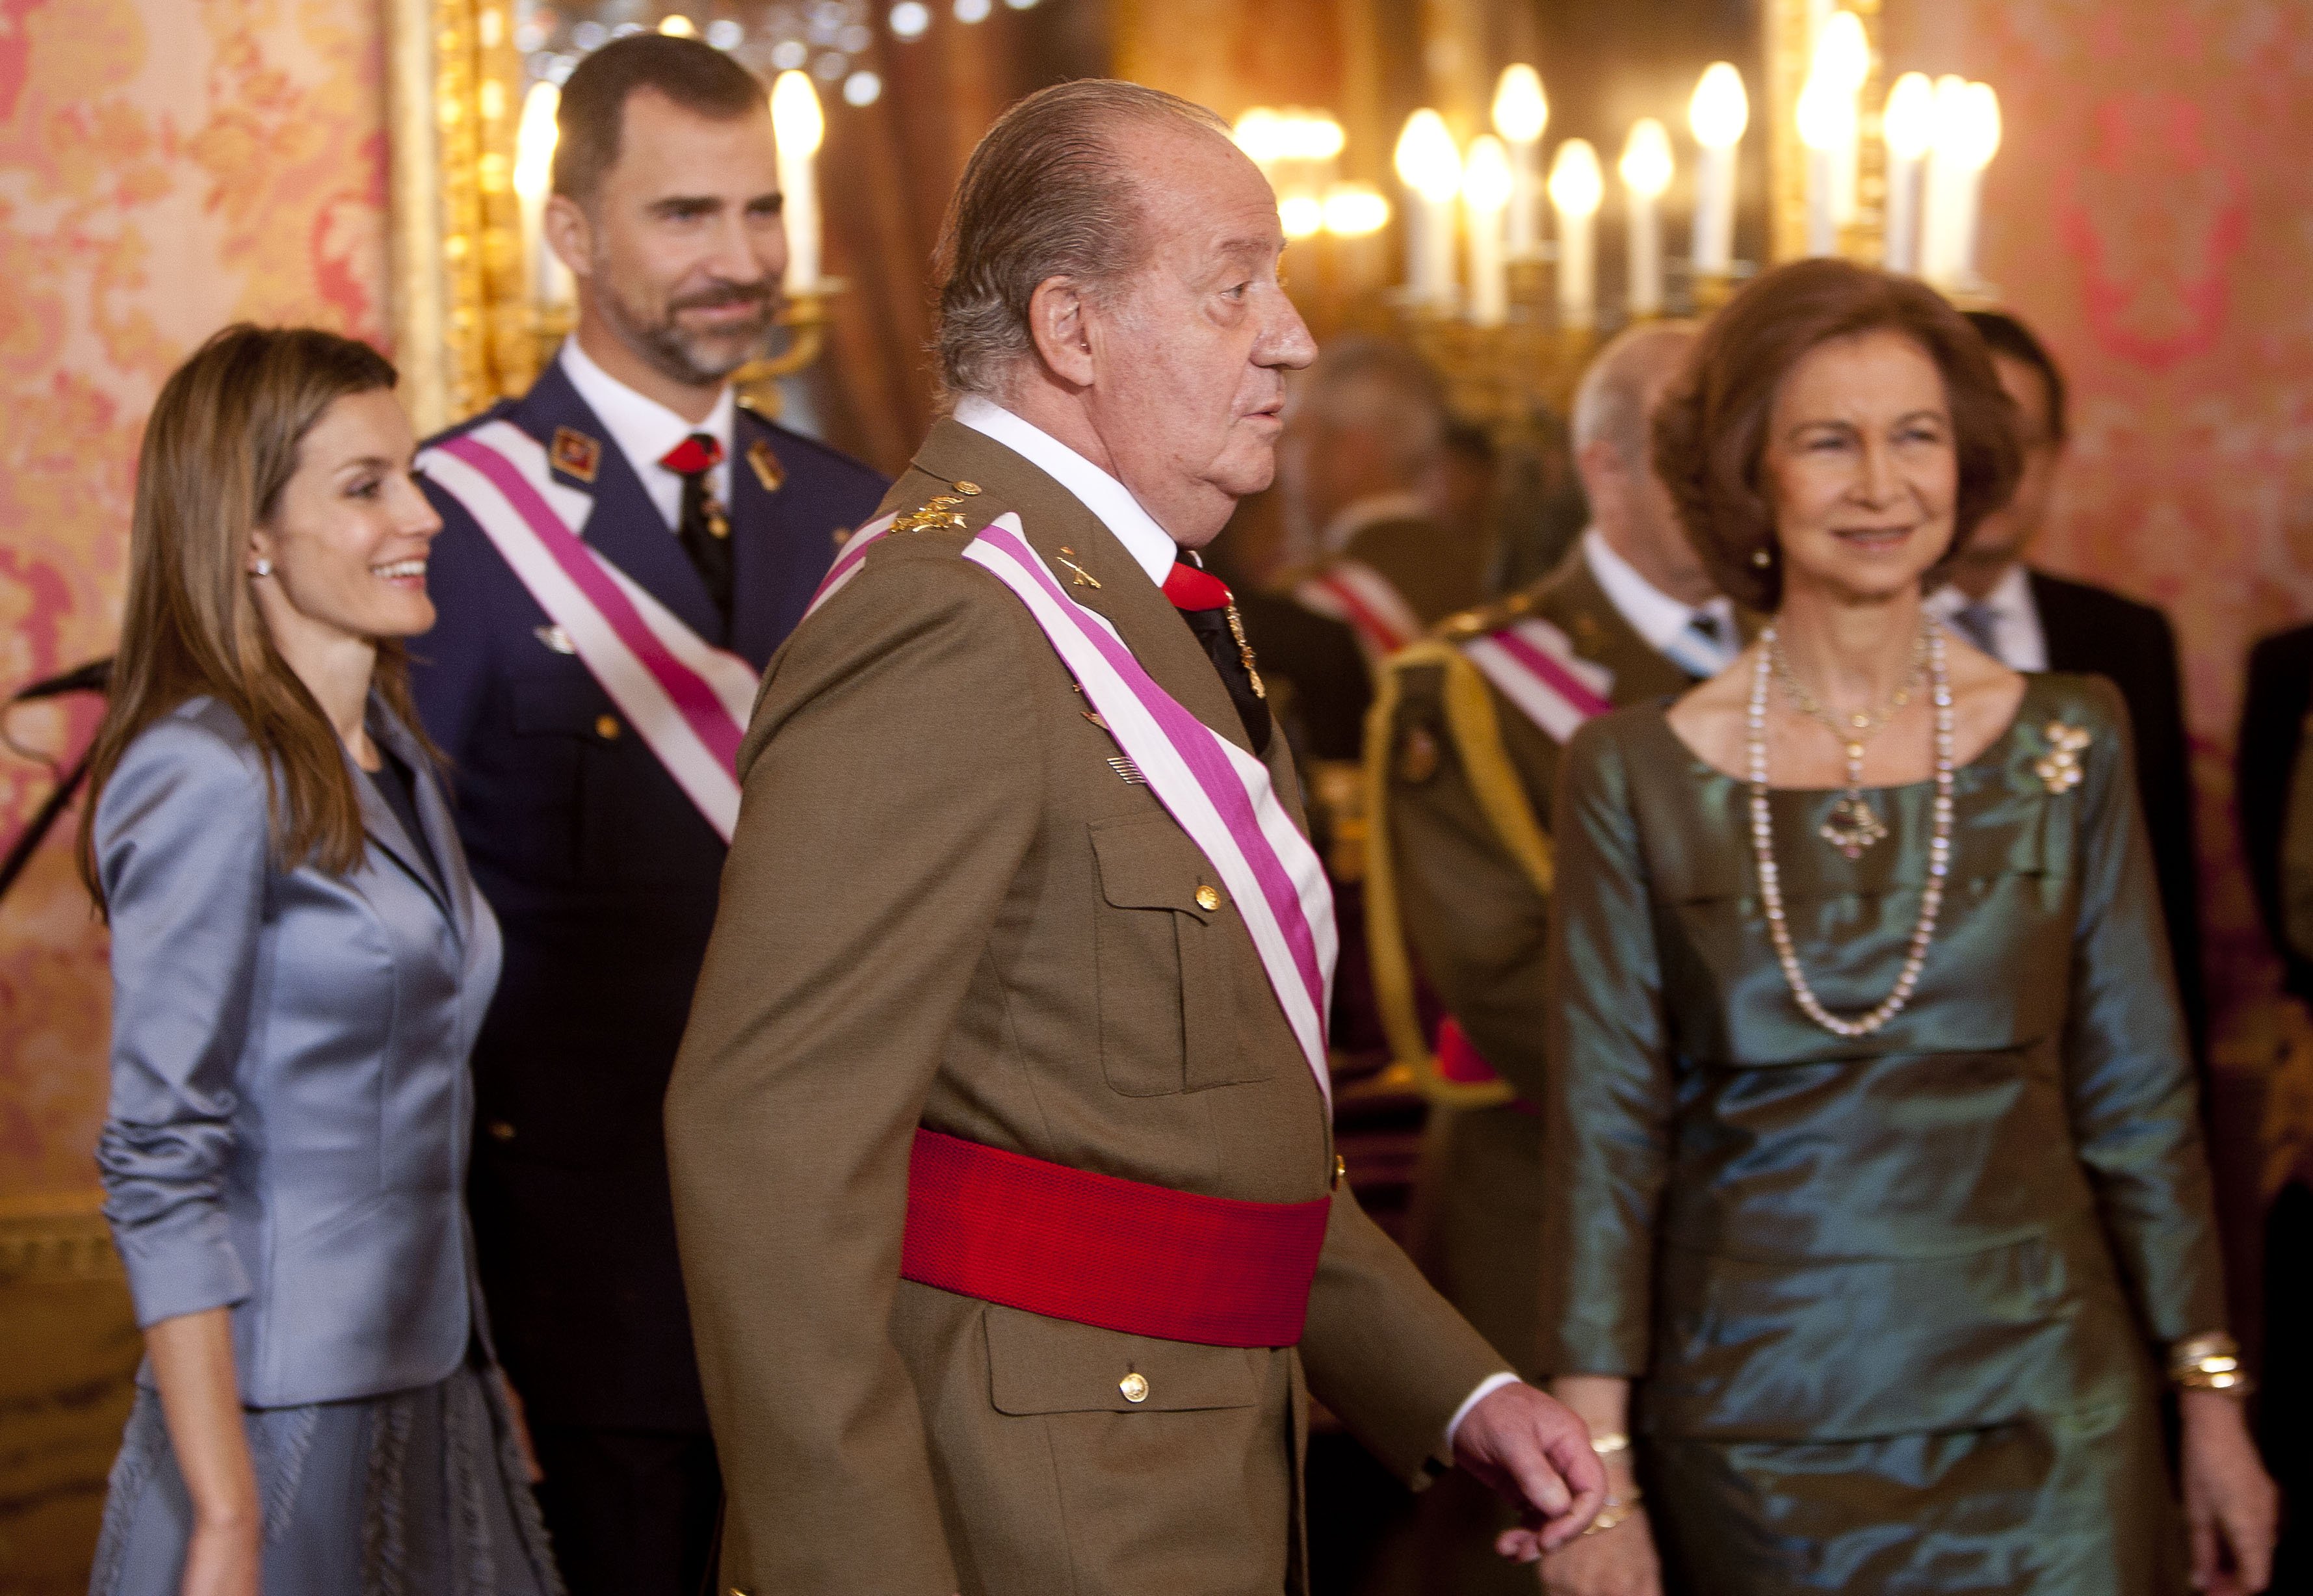 Princesa Letizia, Príncipe Felipe, Rey Juan Carlos y Reina Sofía en Pascua Militar en el Palacio Real en enero de 2011 en Madrid, España || Fuente: Getty Images